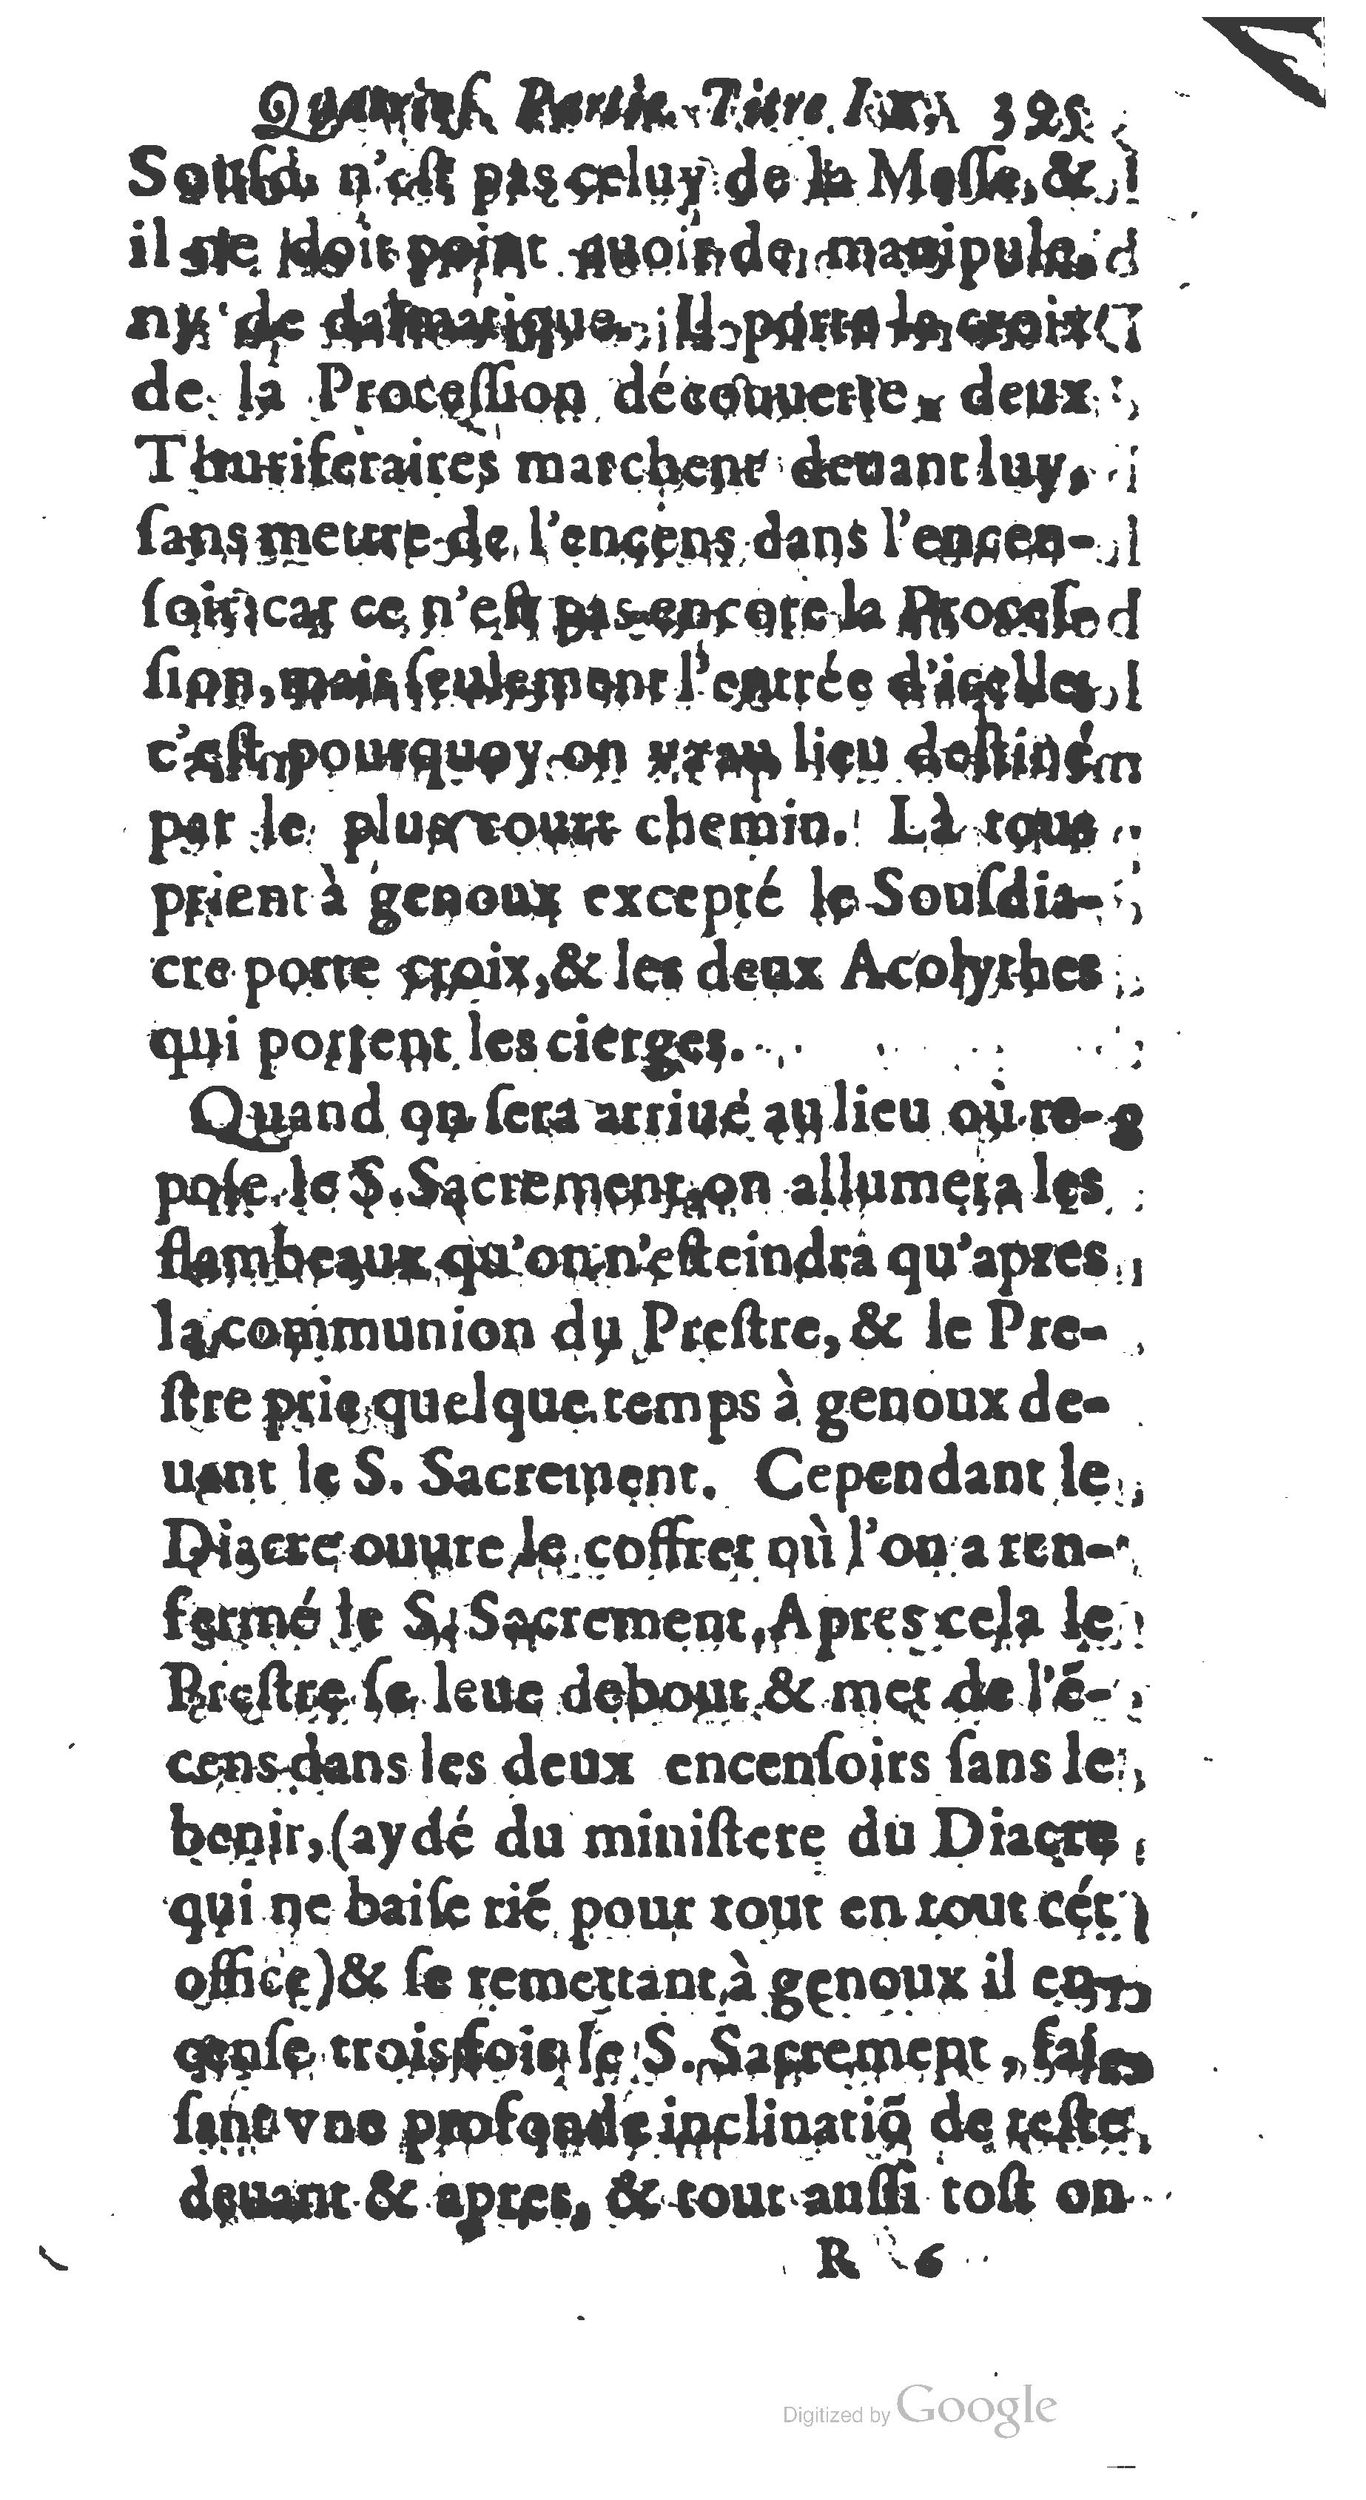 1651 Abrégé du trésor des cérémonies ecclésiastiques Guillermet_BM Lyon_Page_414.jpg